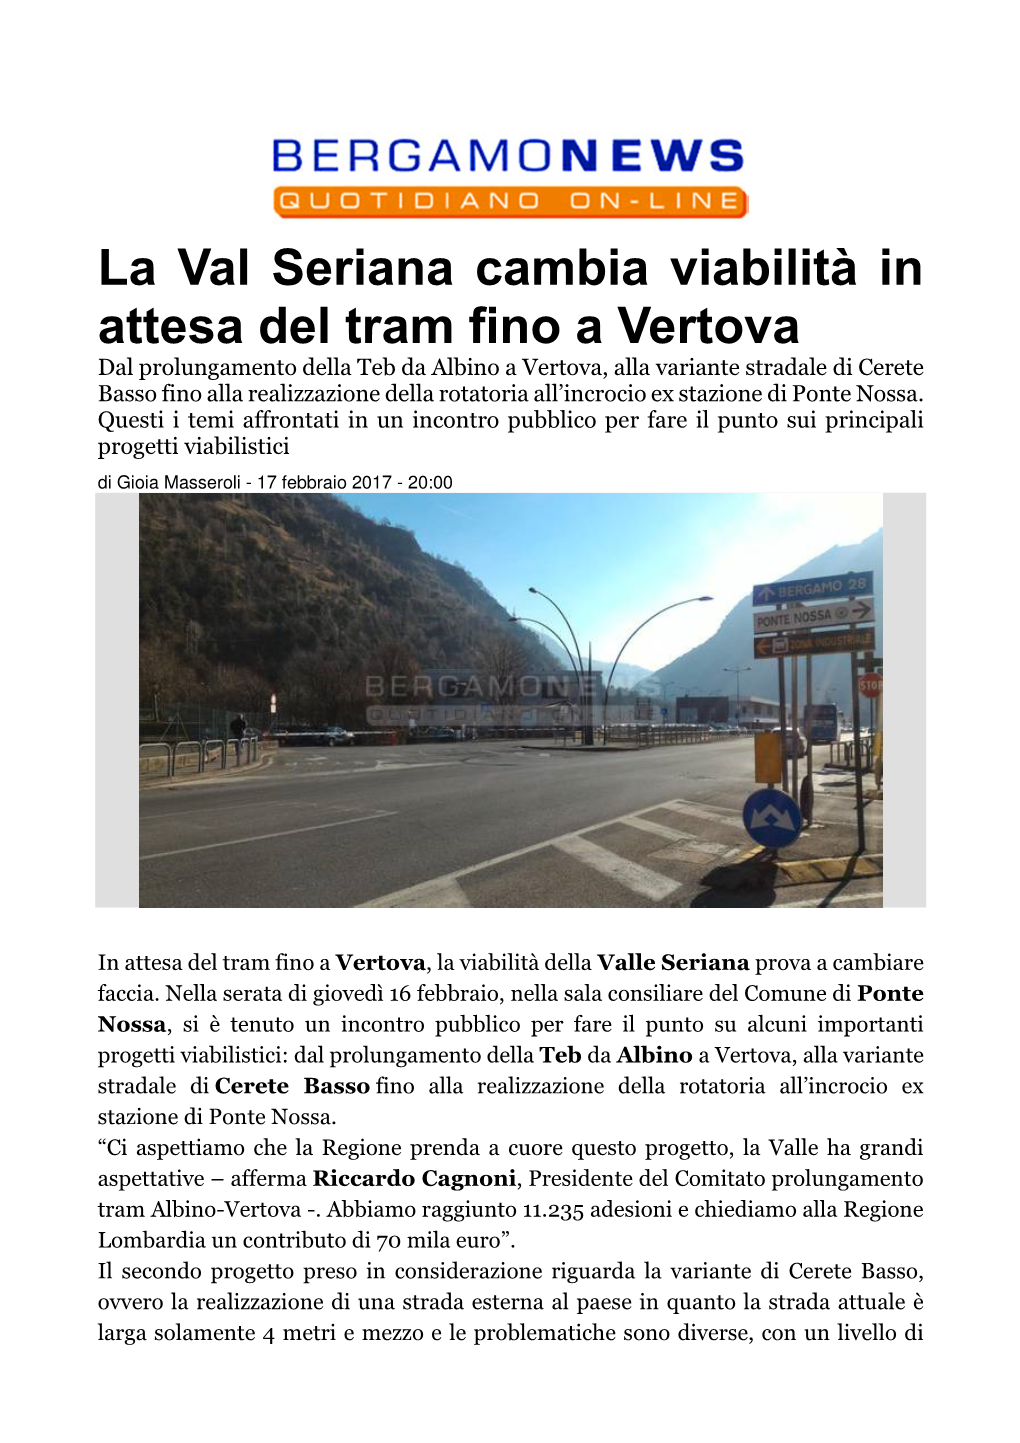 La Val Seriana Cambia Viabilità in Attesa Del Tram Fino a Vertova